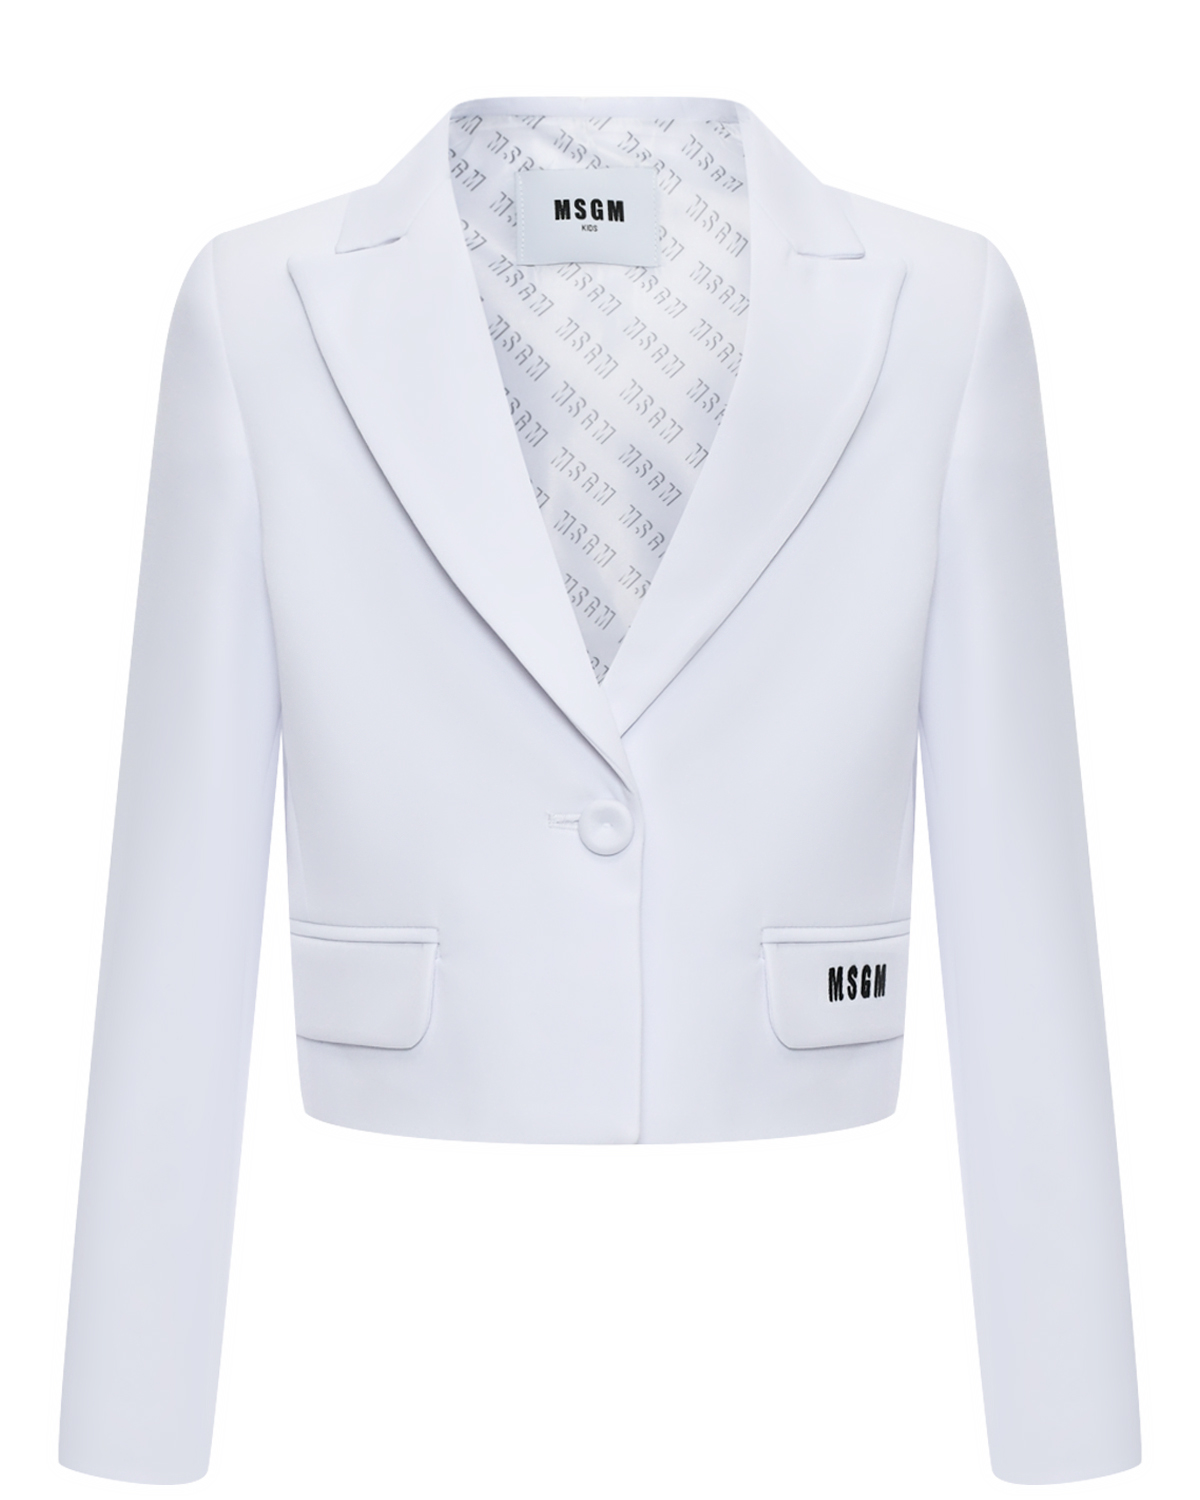 Пиджак укороченный белый на одной пуговице MSGM пиджак оверсайз белый glvr m